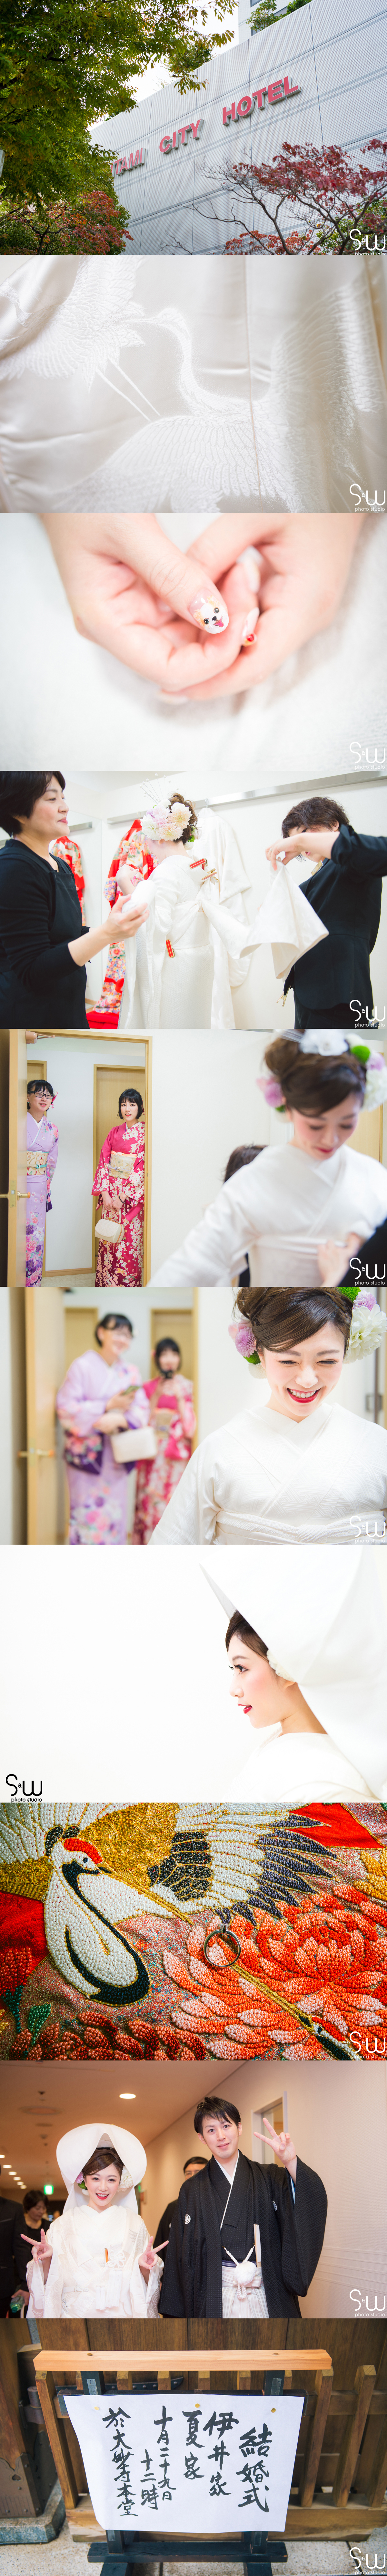 婚禮攝影,日本大阪神社婚禮,海外婚禮